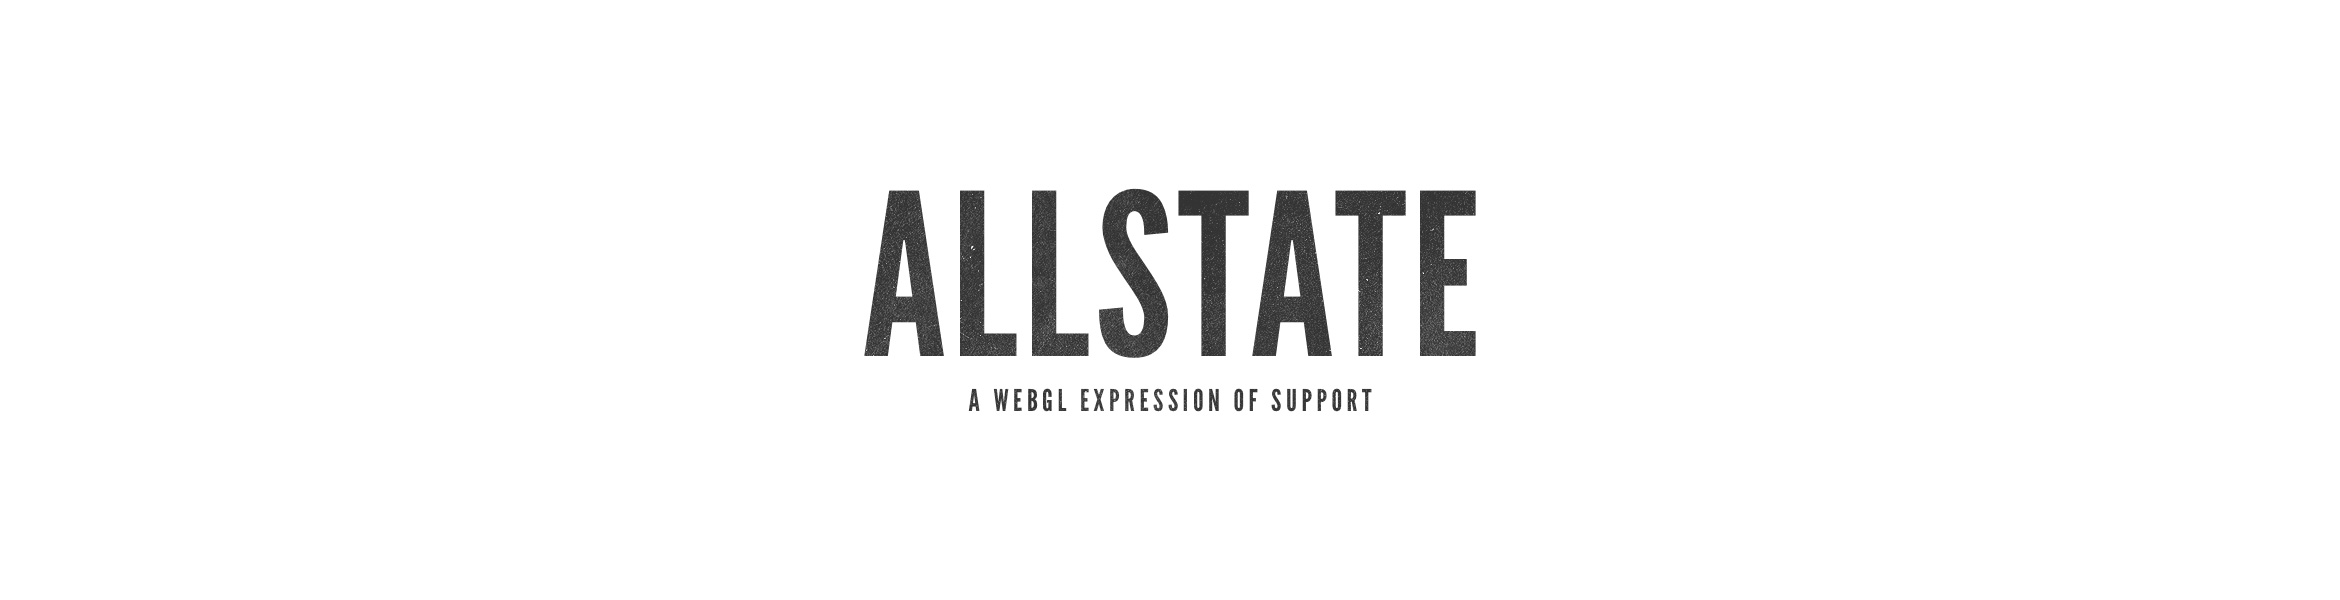 Allstate-BT